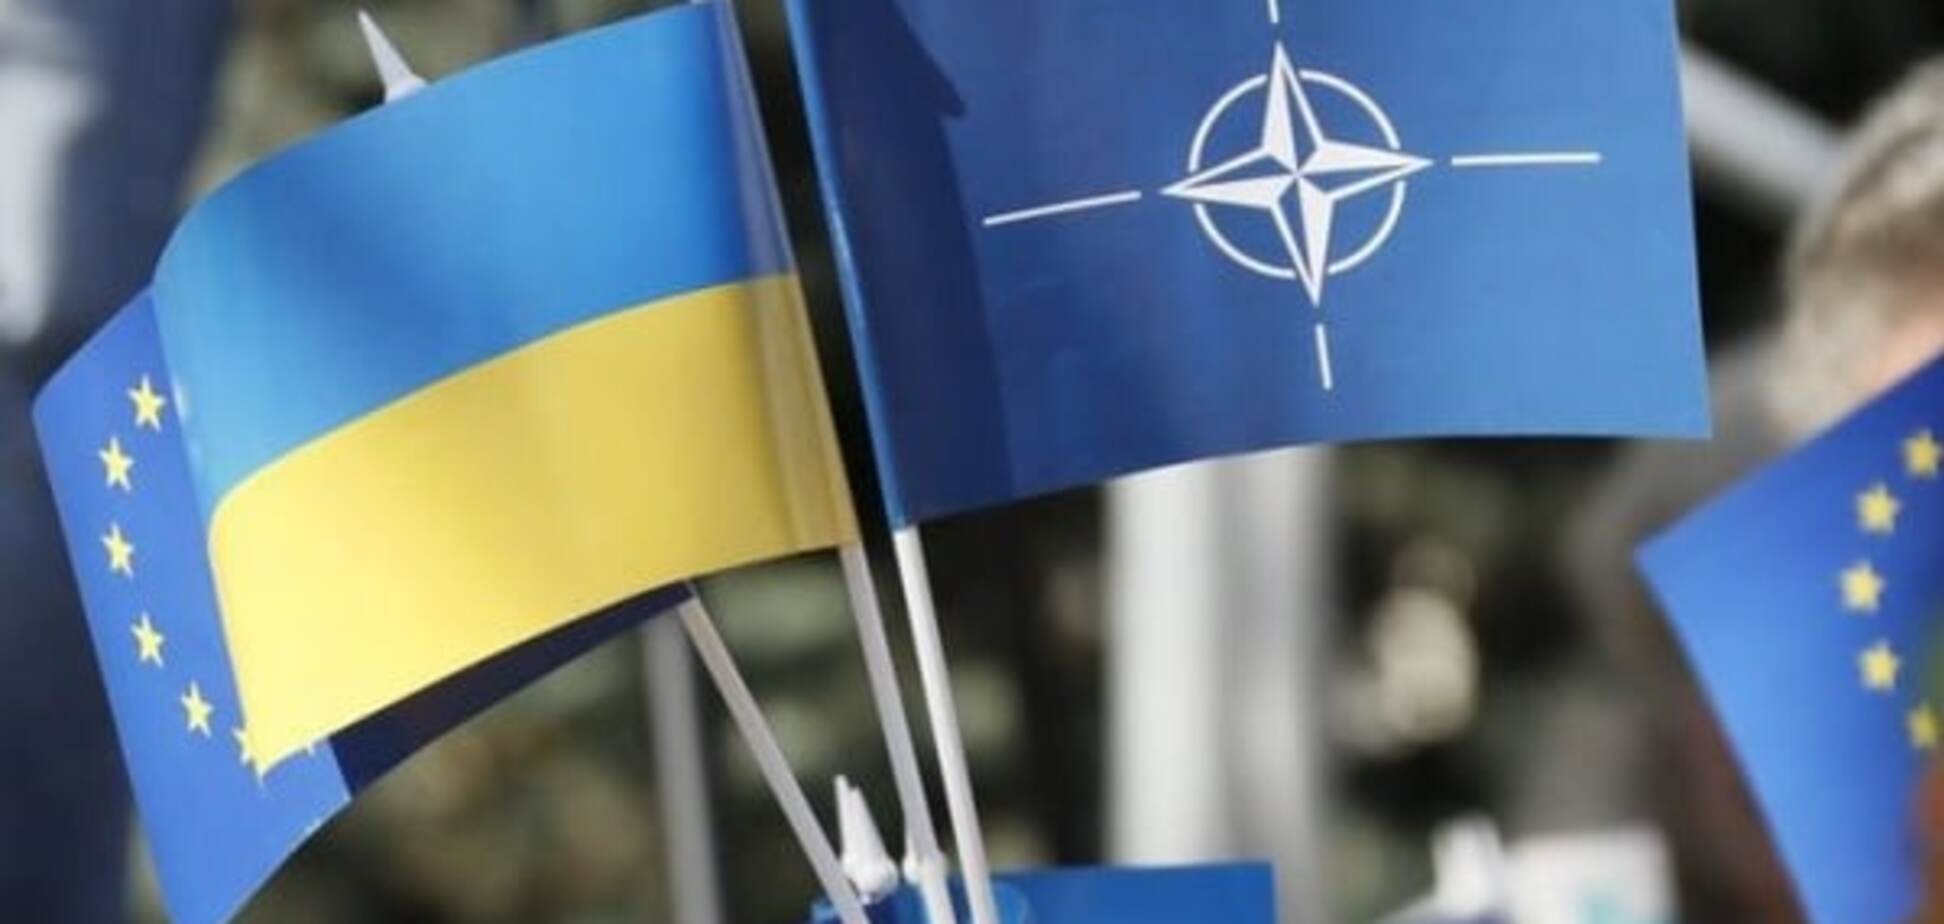 НАТО стало ближче: Рада прийняла важливий закон про співпрацю з Альянсом